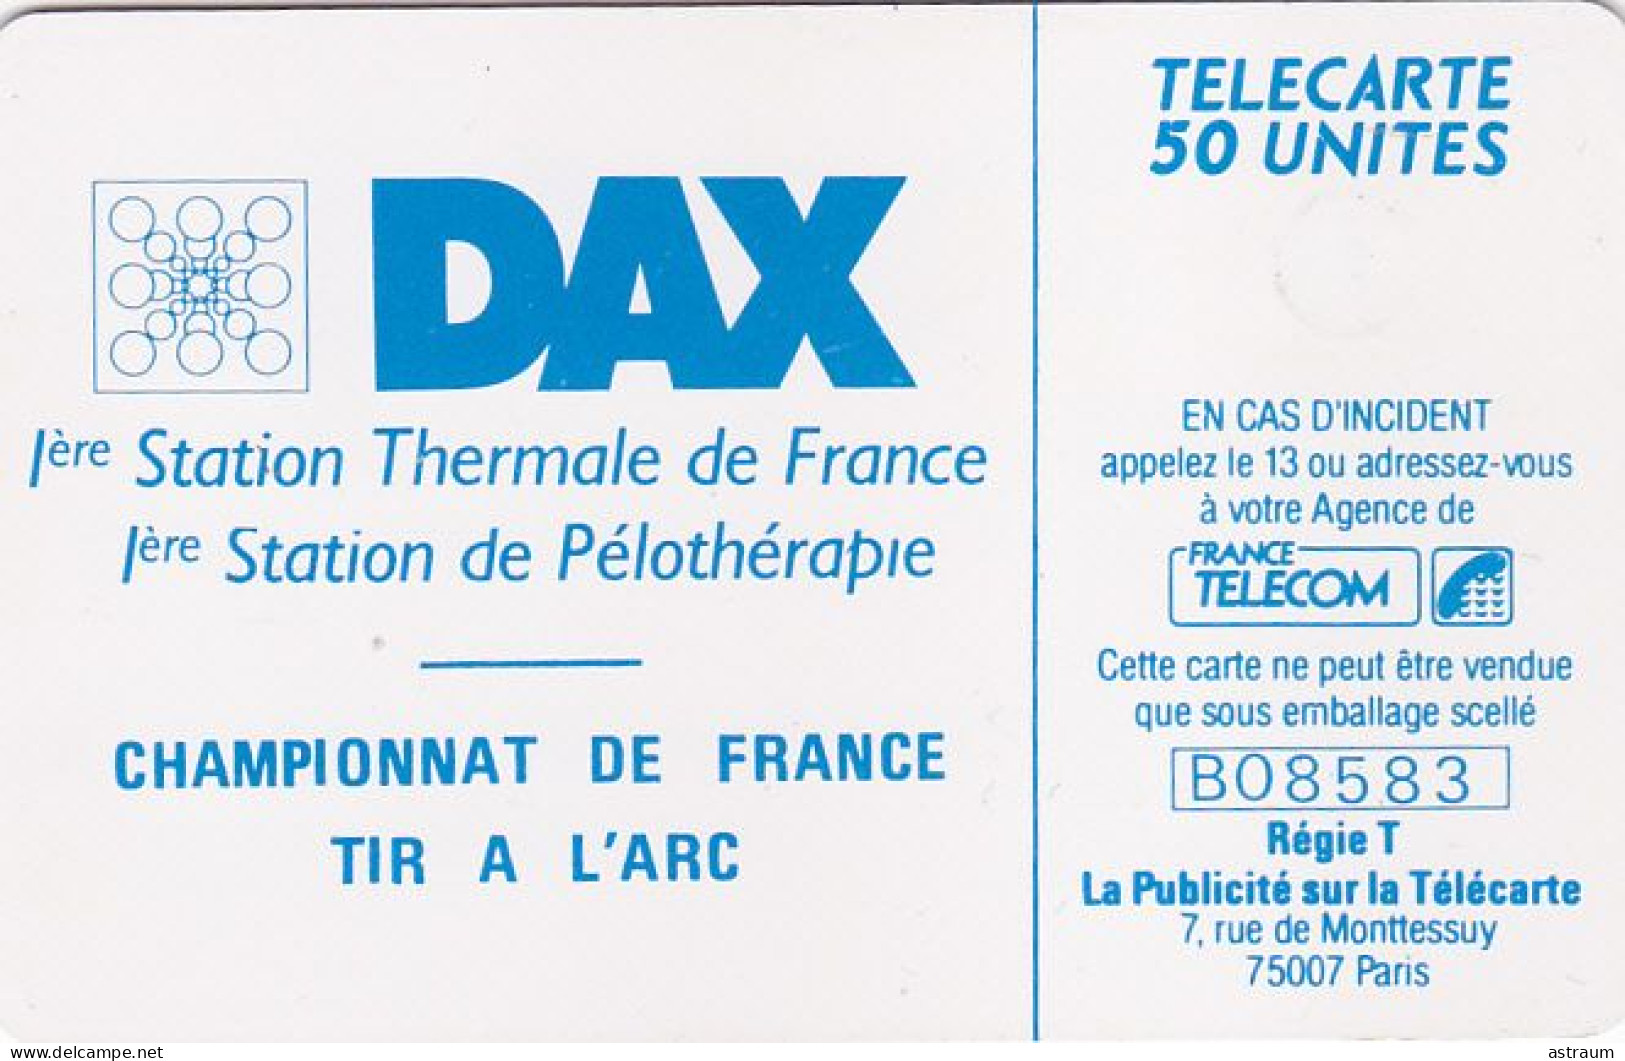 Telecarte Privée D432 NEUVE - Dax Championnat De Tir A L'arc - 1000 Ex - Gem - 50 Un - 1990 - Privées